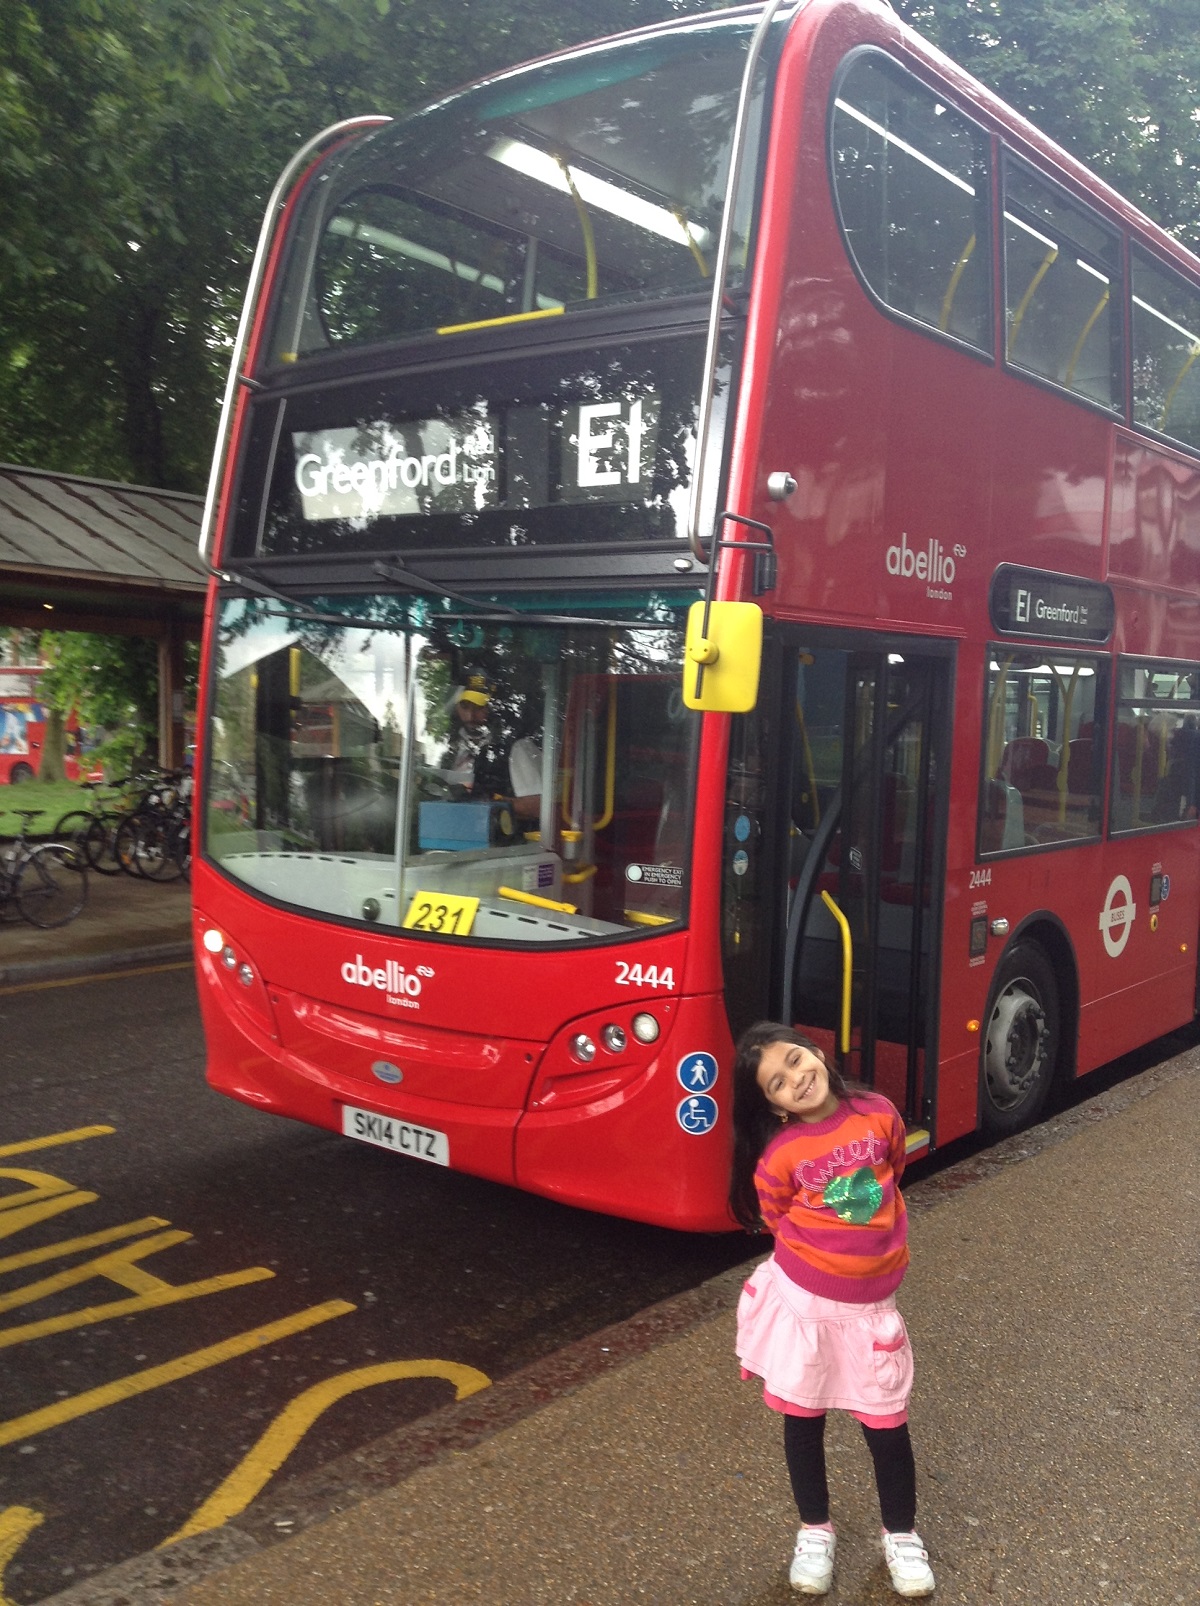  Buses in London